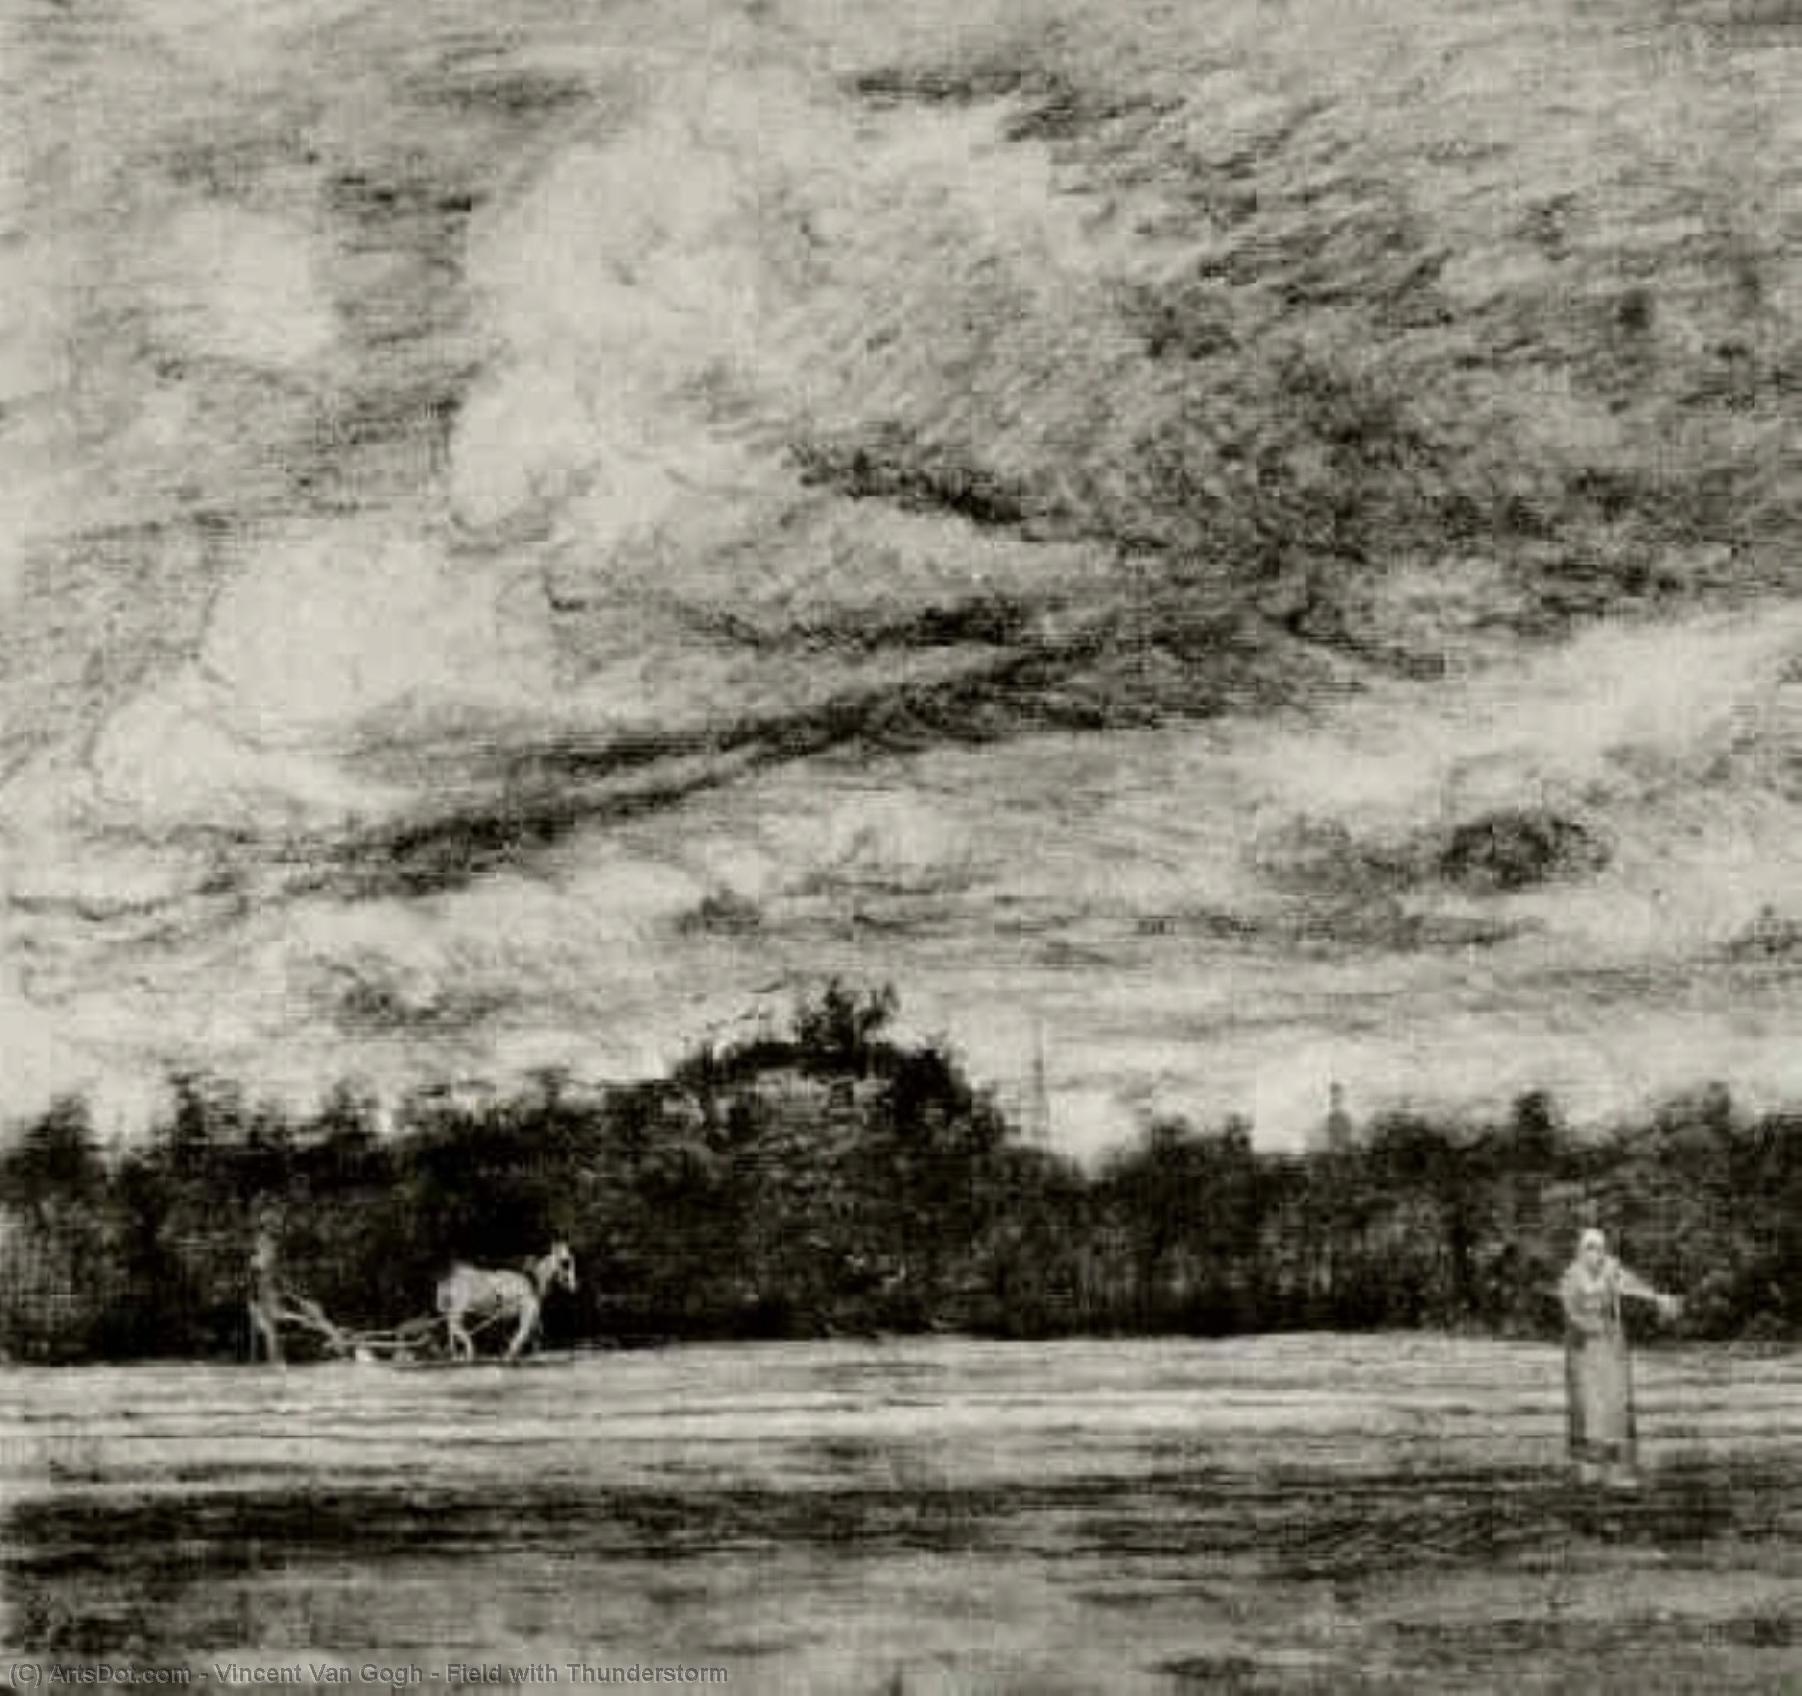 WikiOO.org - Enciklopedija likovnih umjetnosti - Slikarstvo, umjetnička djela Vincent Van Gogh - Field with Thunderstorm